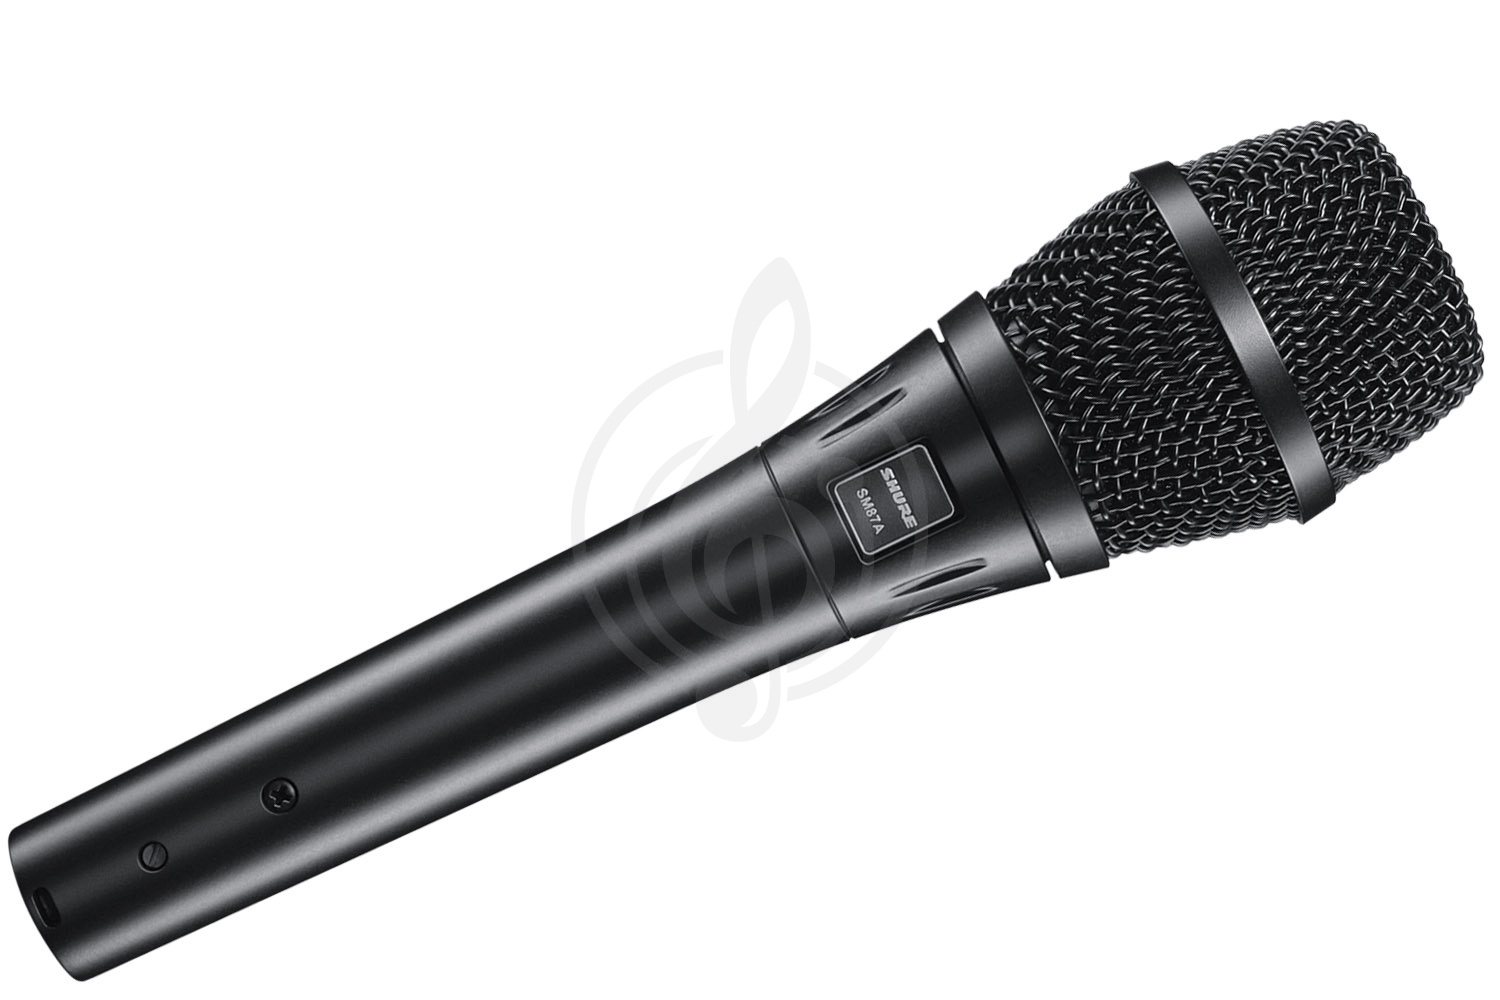 Конденсаторный вокальный микрофон Конденсаторные вокальные микрофоны Shure SHURE SM87A - конденсаторный вокальный микрофон SH100 - фото 1